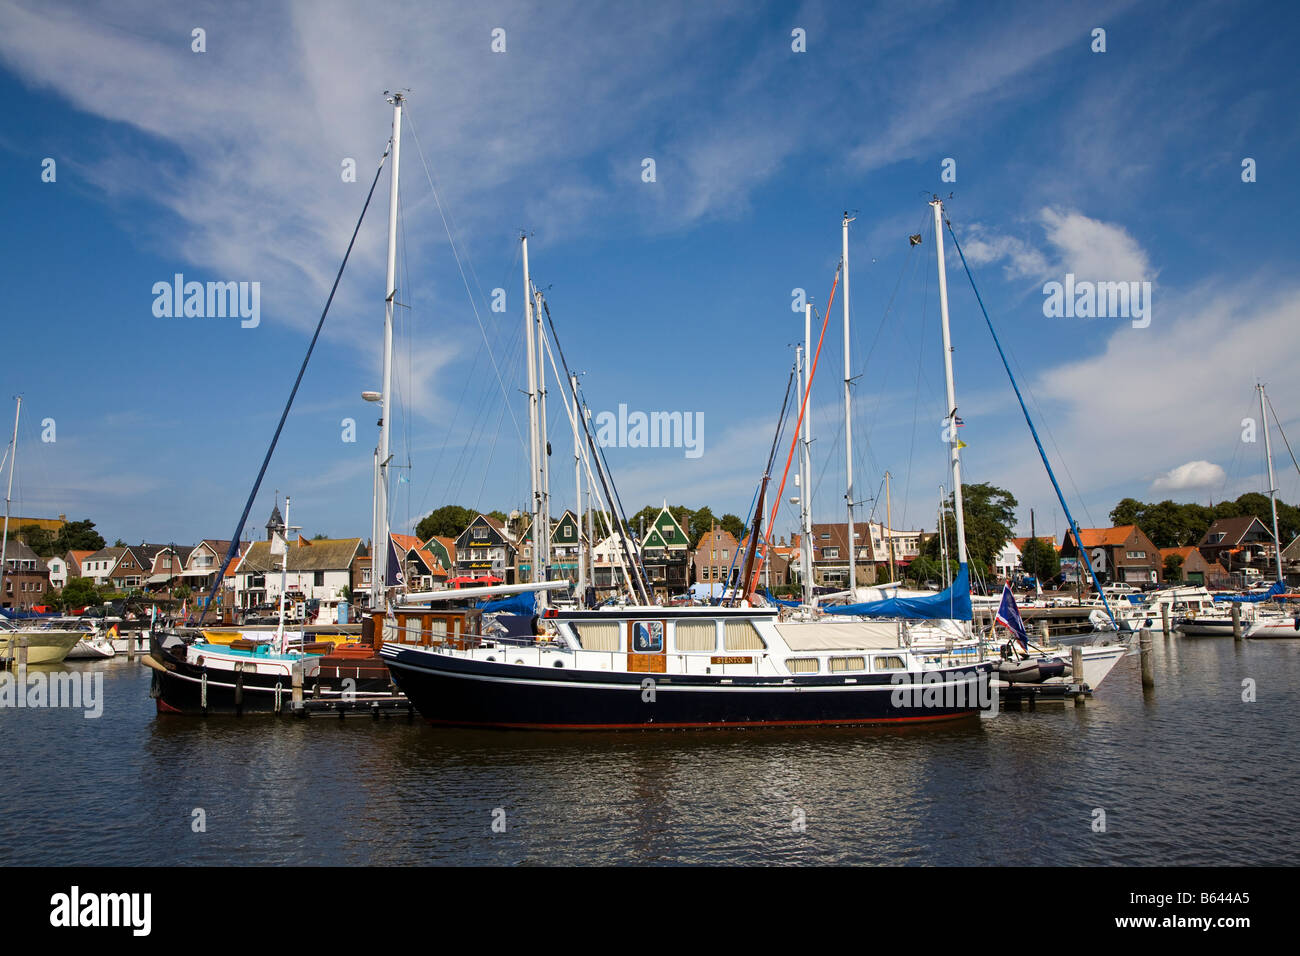 Angelboote/Fischerboote im Hafen von Urk Niederlande Stockfoto